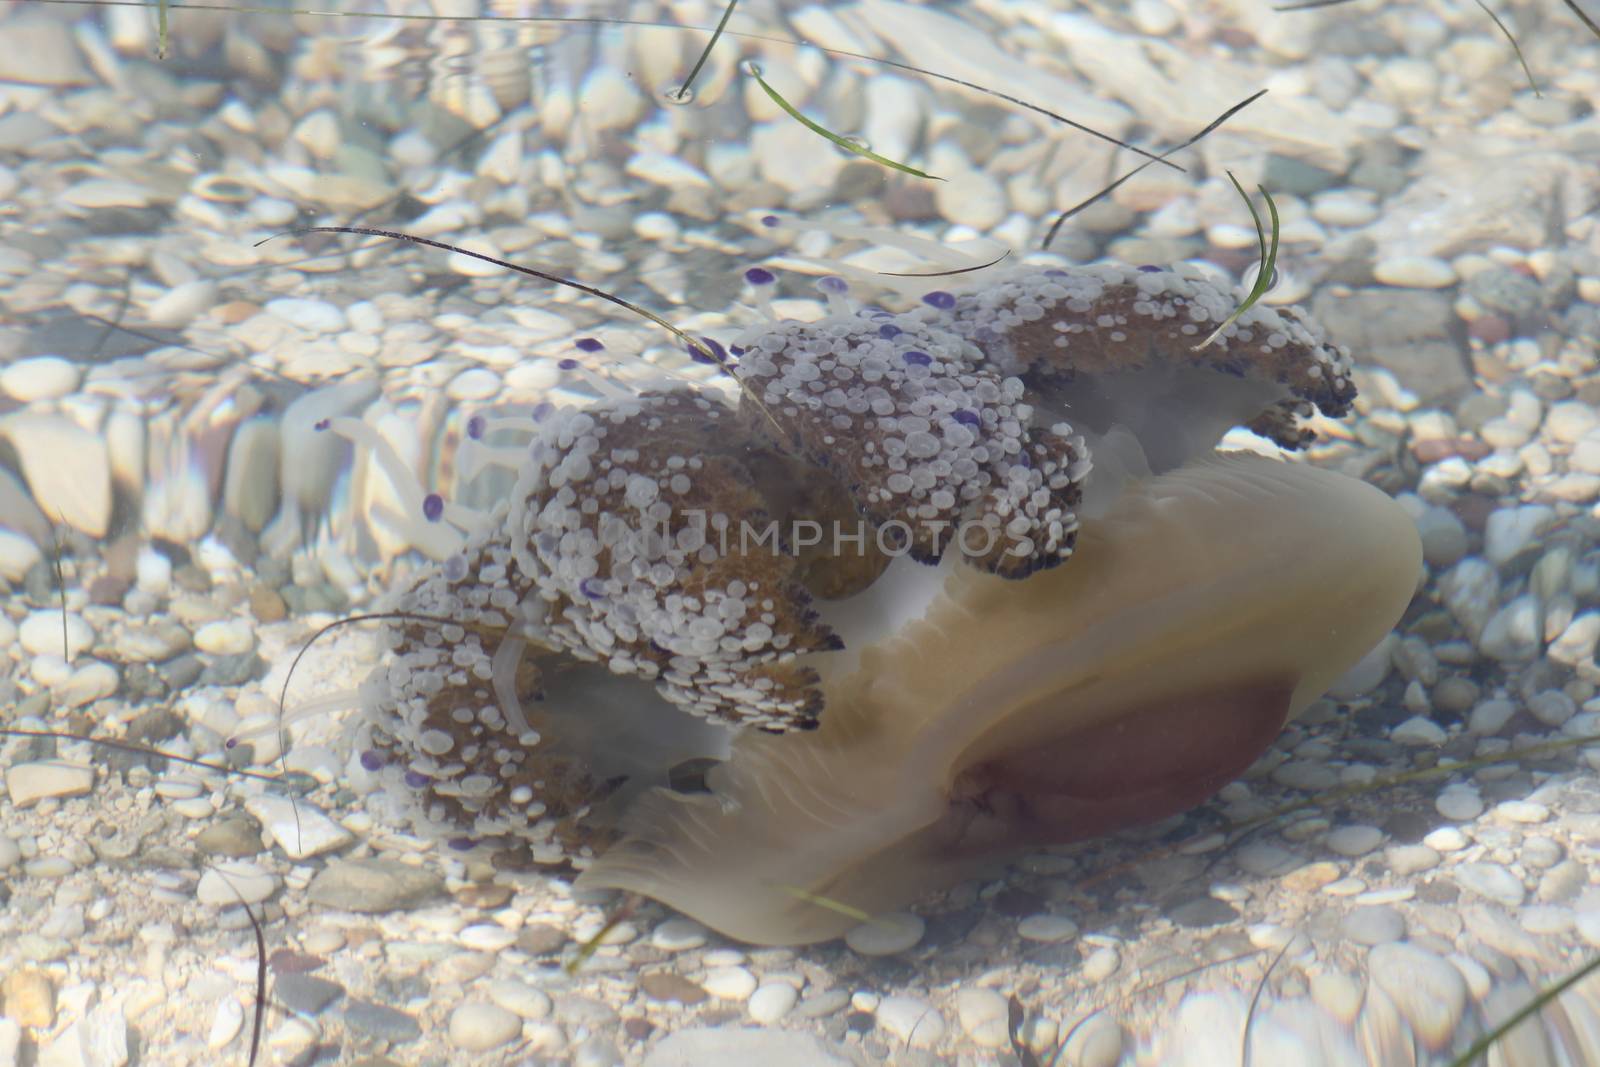 Jelyfish in very clear water by Kasia_Lawrynowicz